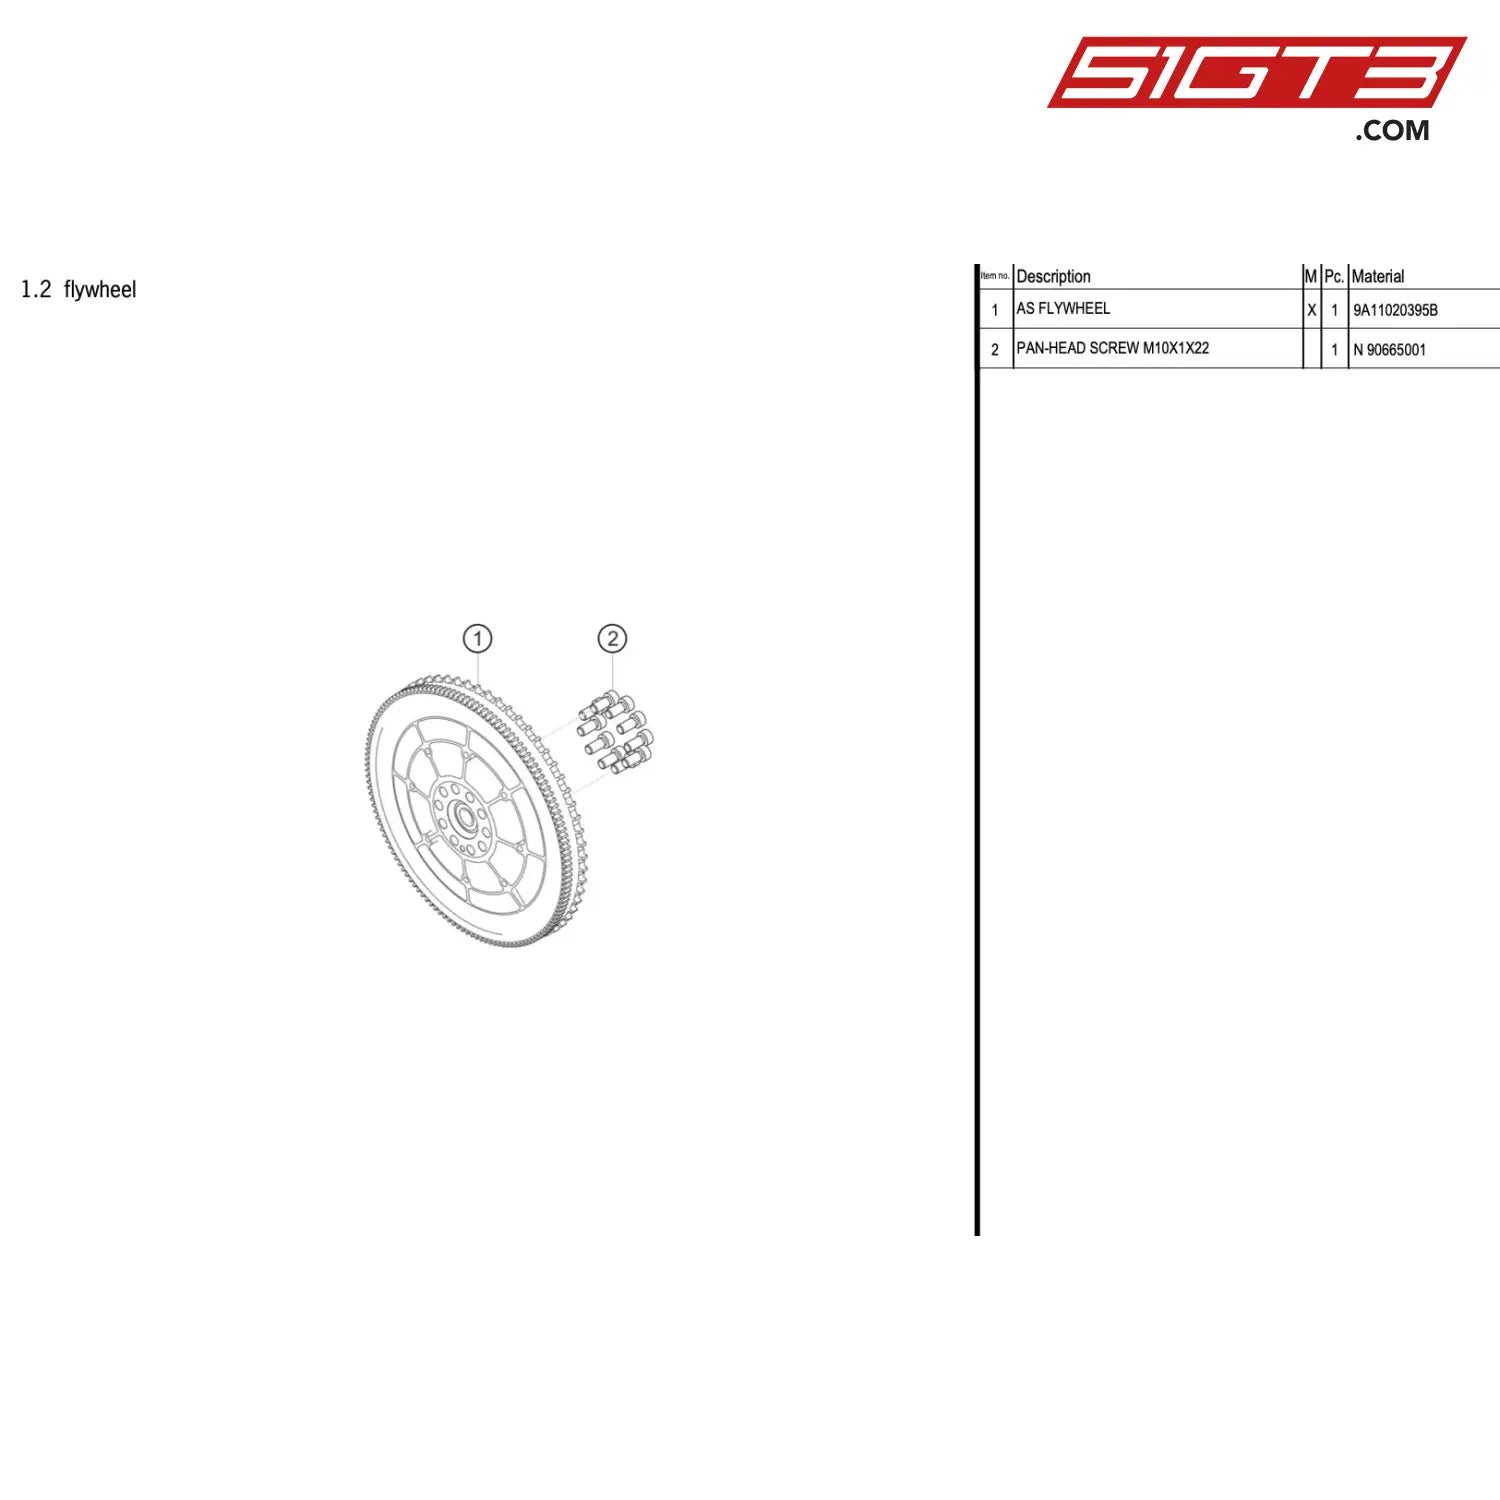 Pan-Head Screw M10X1X22 - N-90665001 [Porsche 911 Gt3 R Type 991 (Gen 2)] Flywheel